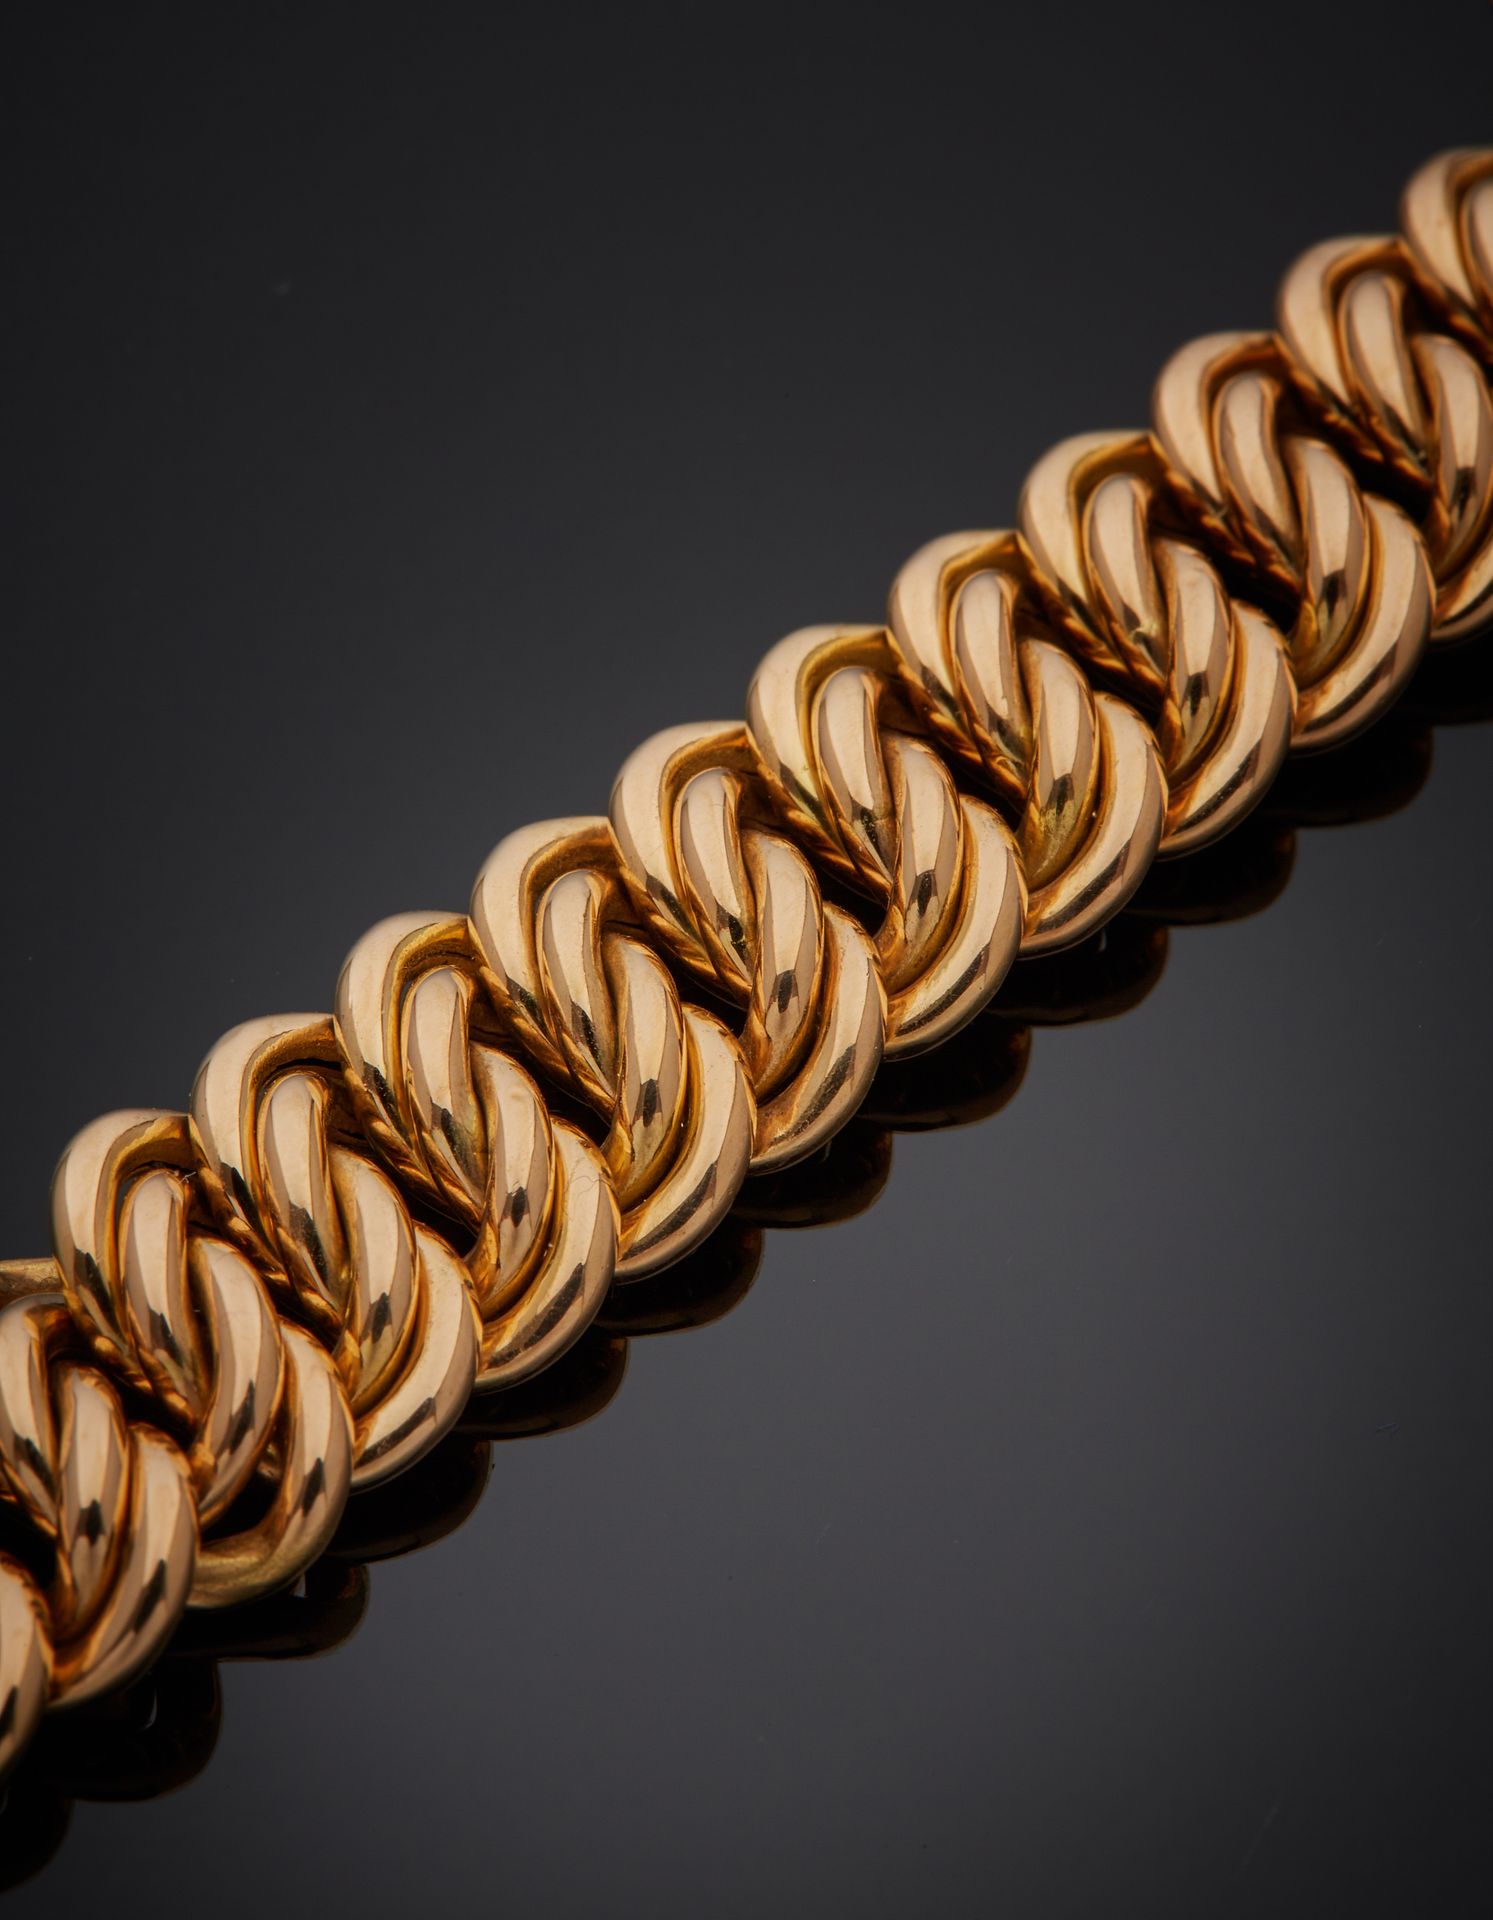 Null 玫瑰金(750‰)美式链扣手镯。小震荡。
长 : 18,5 cm - 宽 : 1,4 cm
重量 : 28,4 g